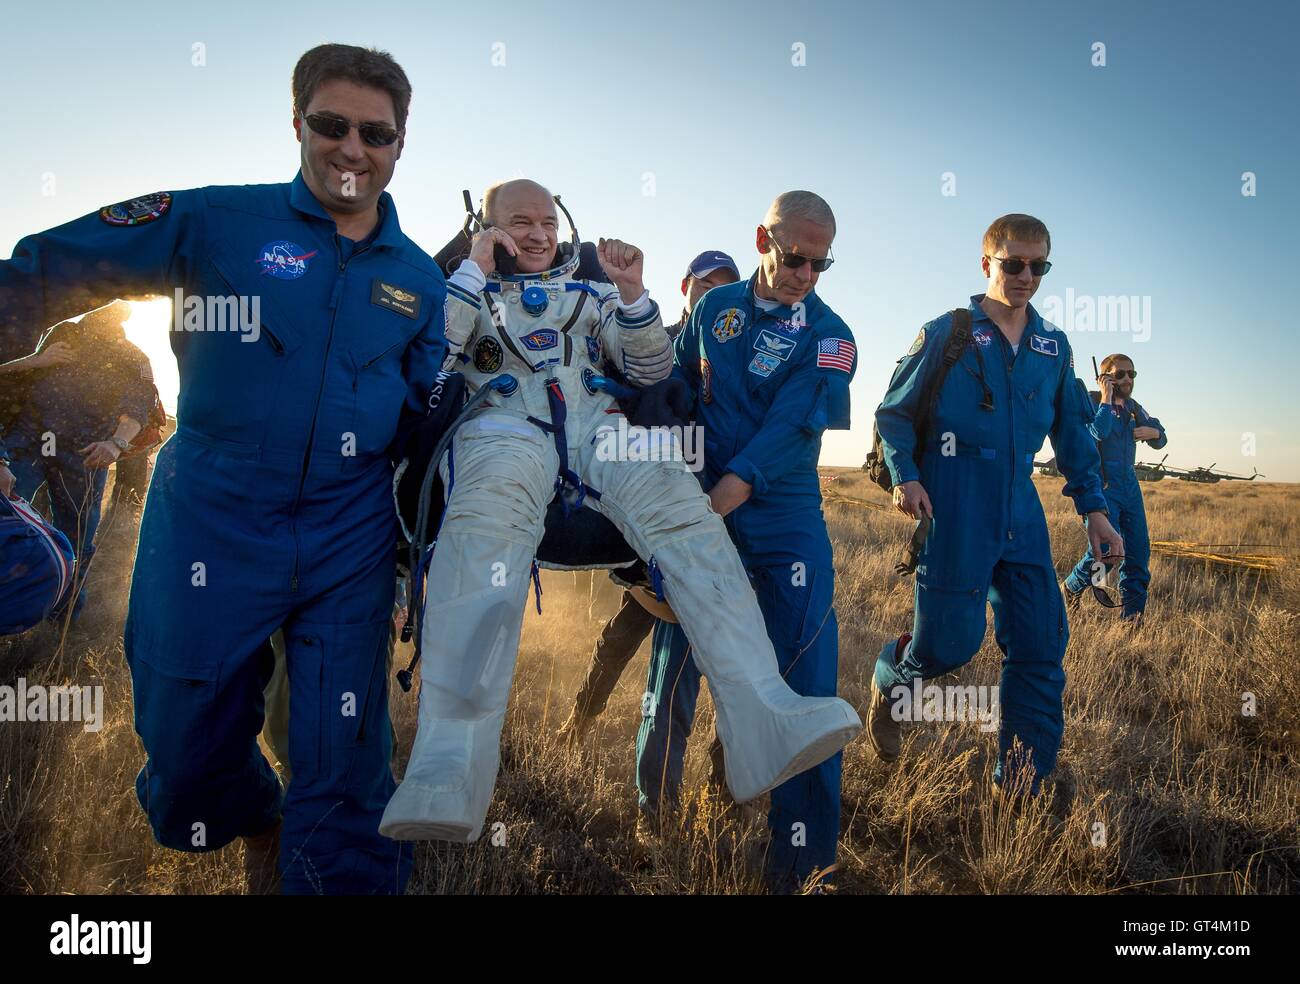 Stazione Spaziale Internazionale Expedition 48 astronauta della NASA Jeff Williams è portato in una tenda poco dopo lo sbarco della Soyuz TMA-20M navicella spaziale Il 7 Settembre 2016 vicino Zhezkazgan, Kazakistan. Foto Stock